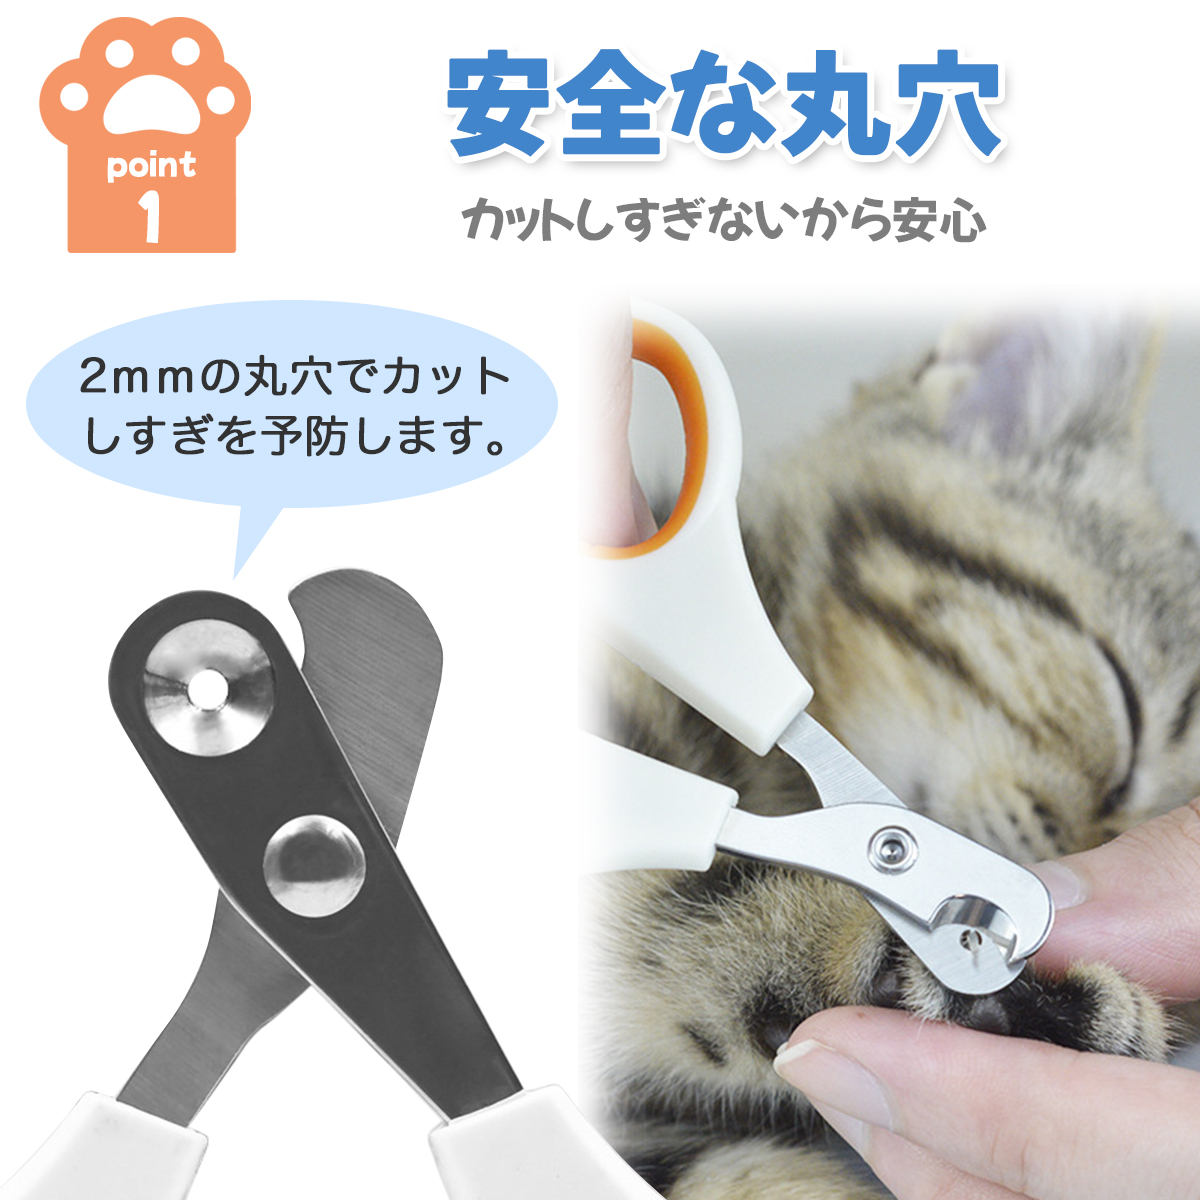  кошка кусачки для ногтей для домашних животных кусачки для ногтей giro подбородок круг лезвие порез . проходить предотвращение для начинающих уход за ногтями маленький размер простой безопасность безопасность 